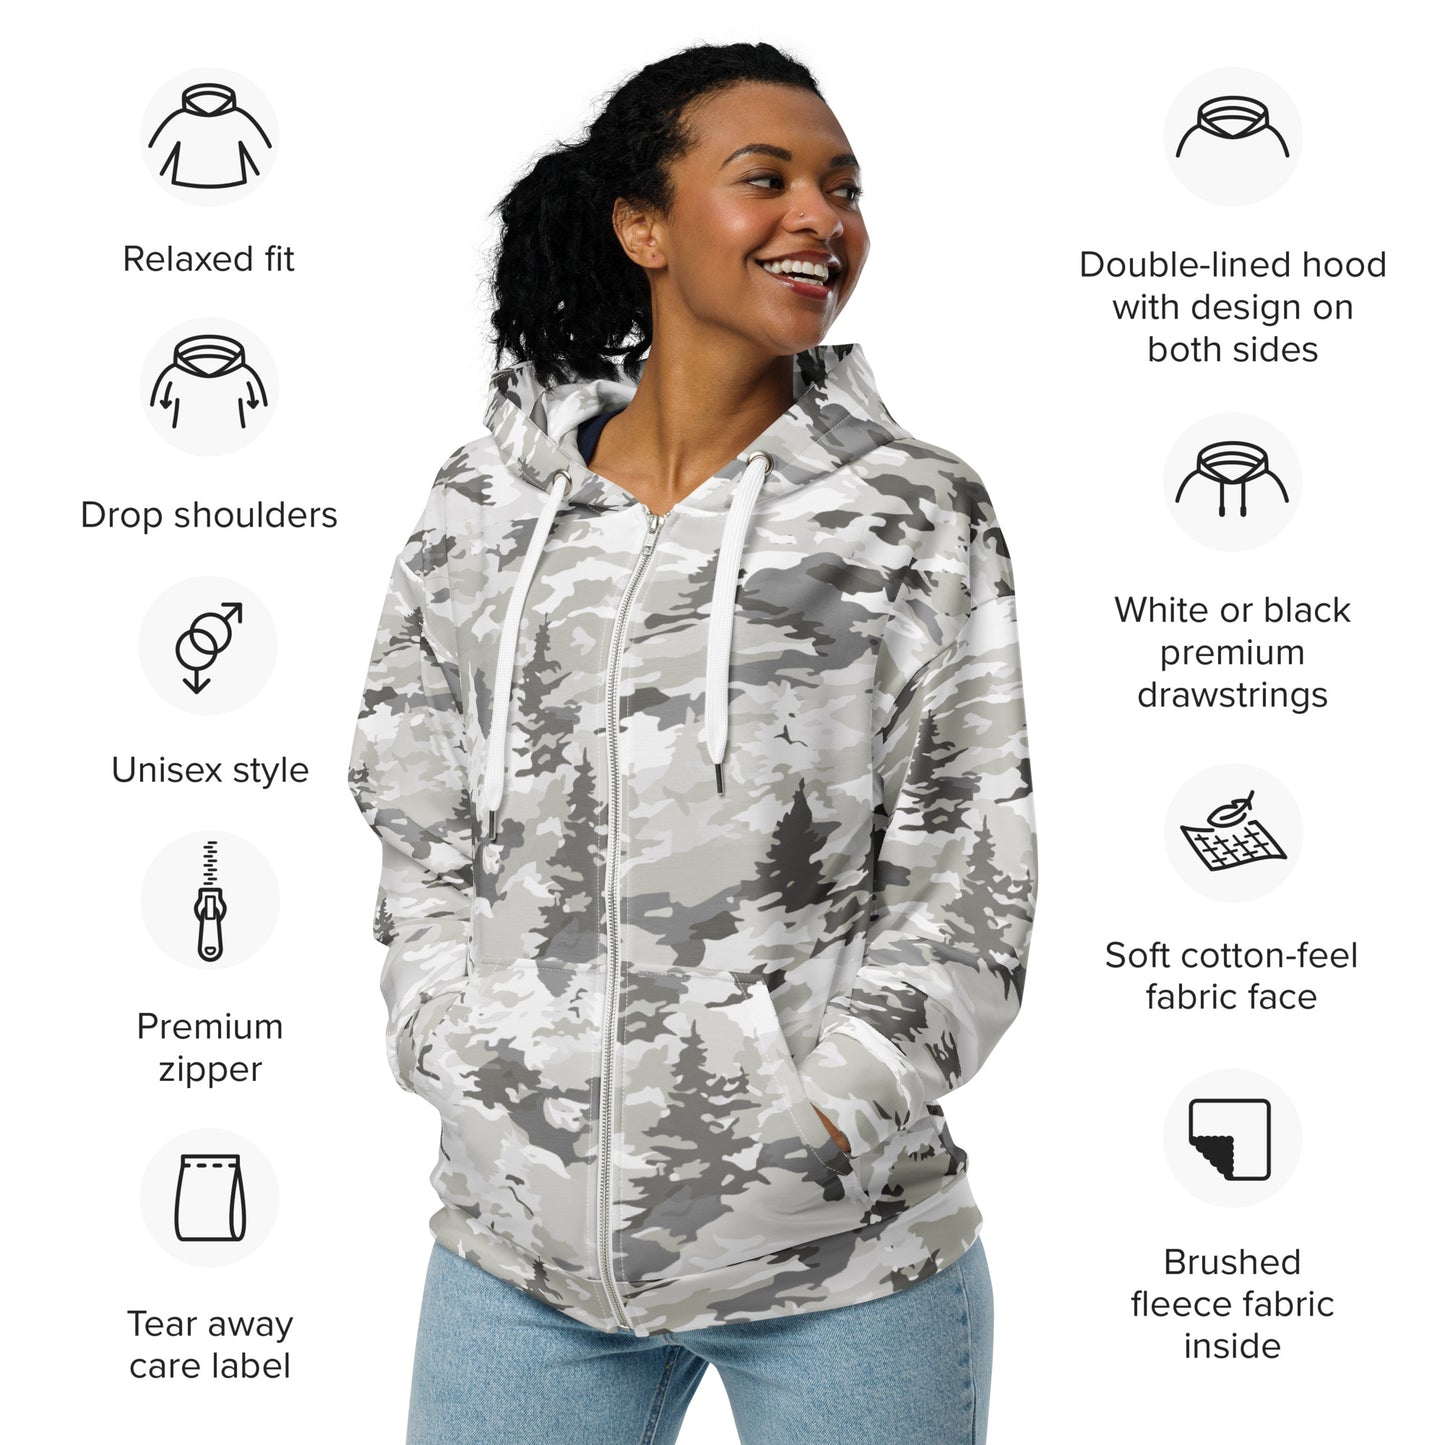 Rayder Edition -  zip hoodie